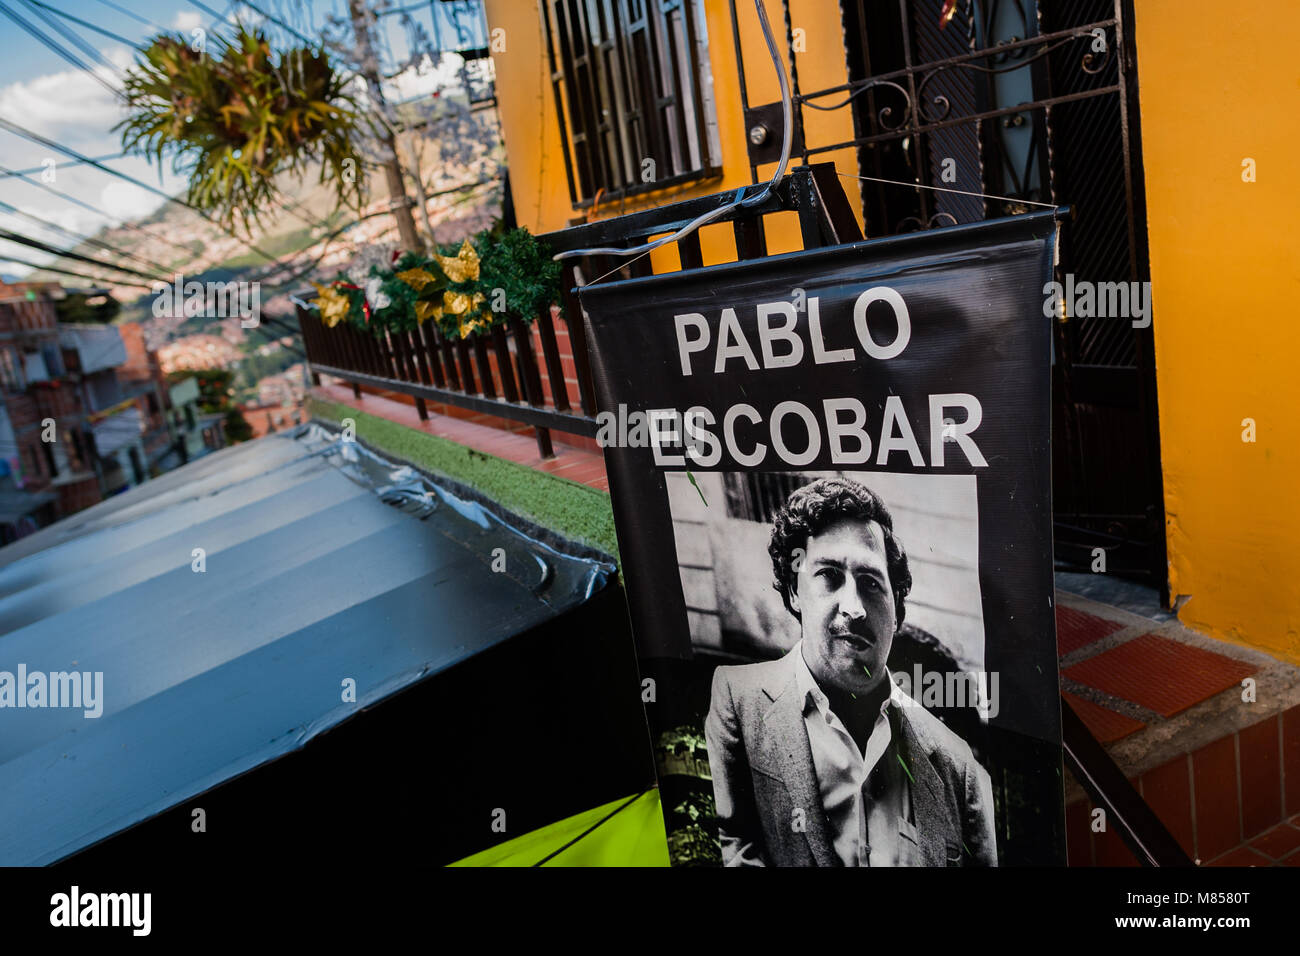 Une bannière, représentant le seigneur de la drogue Pablo Escobar, est vu accroché au-dessus d'un salon de coiffure dans le quartier Pablo Escobar, Medellín, Colombie. Banque D'Images